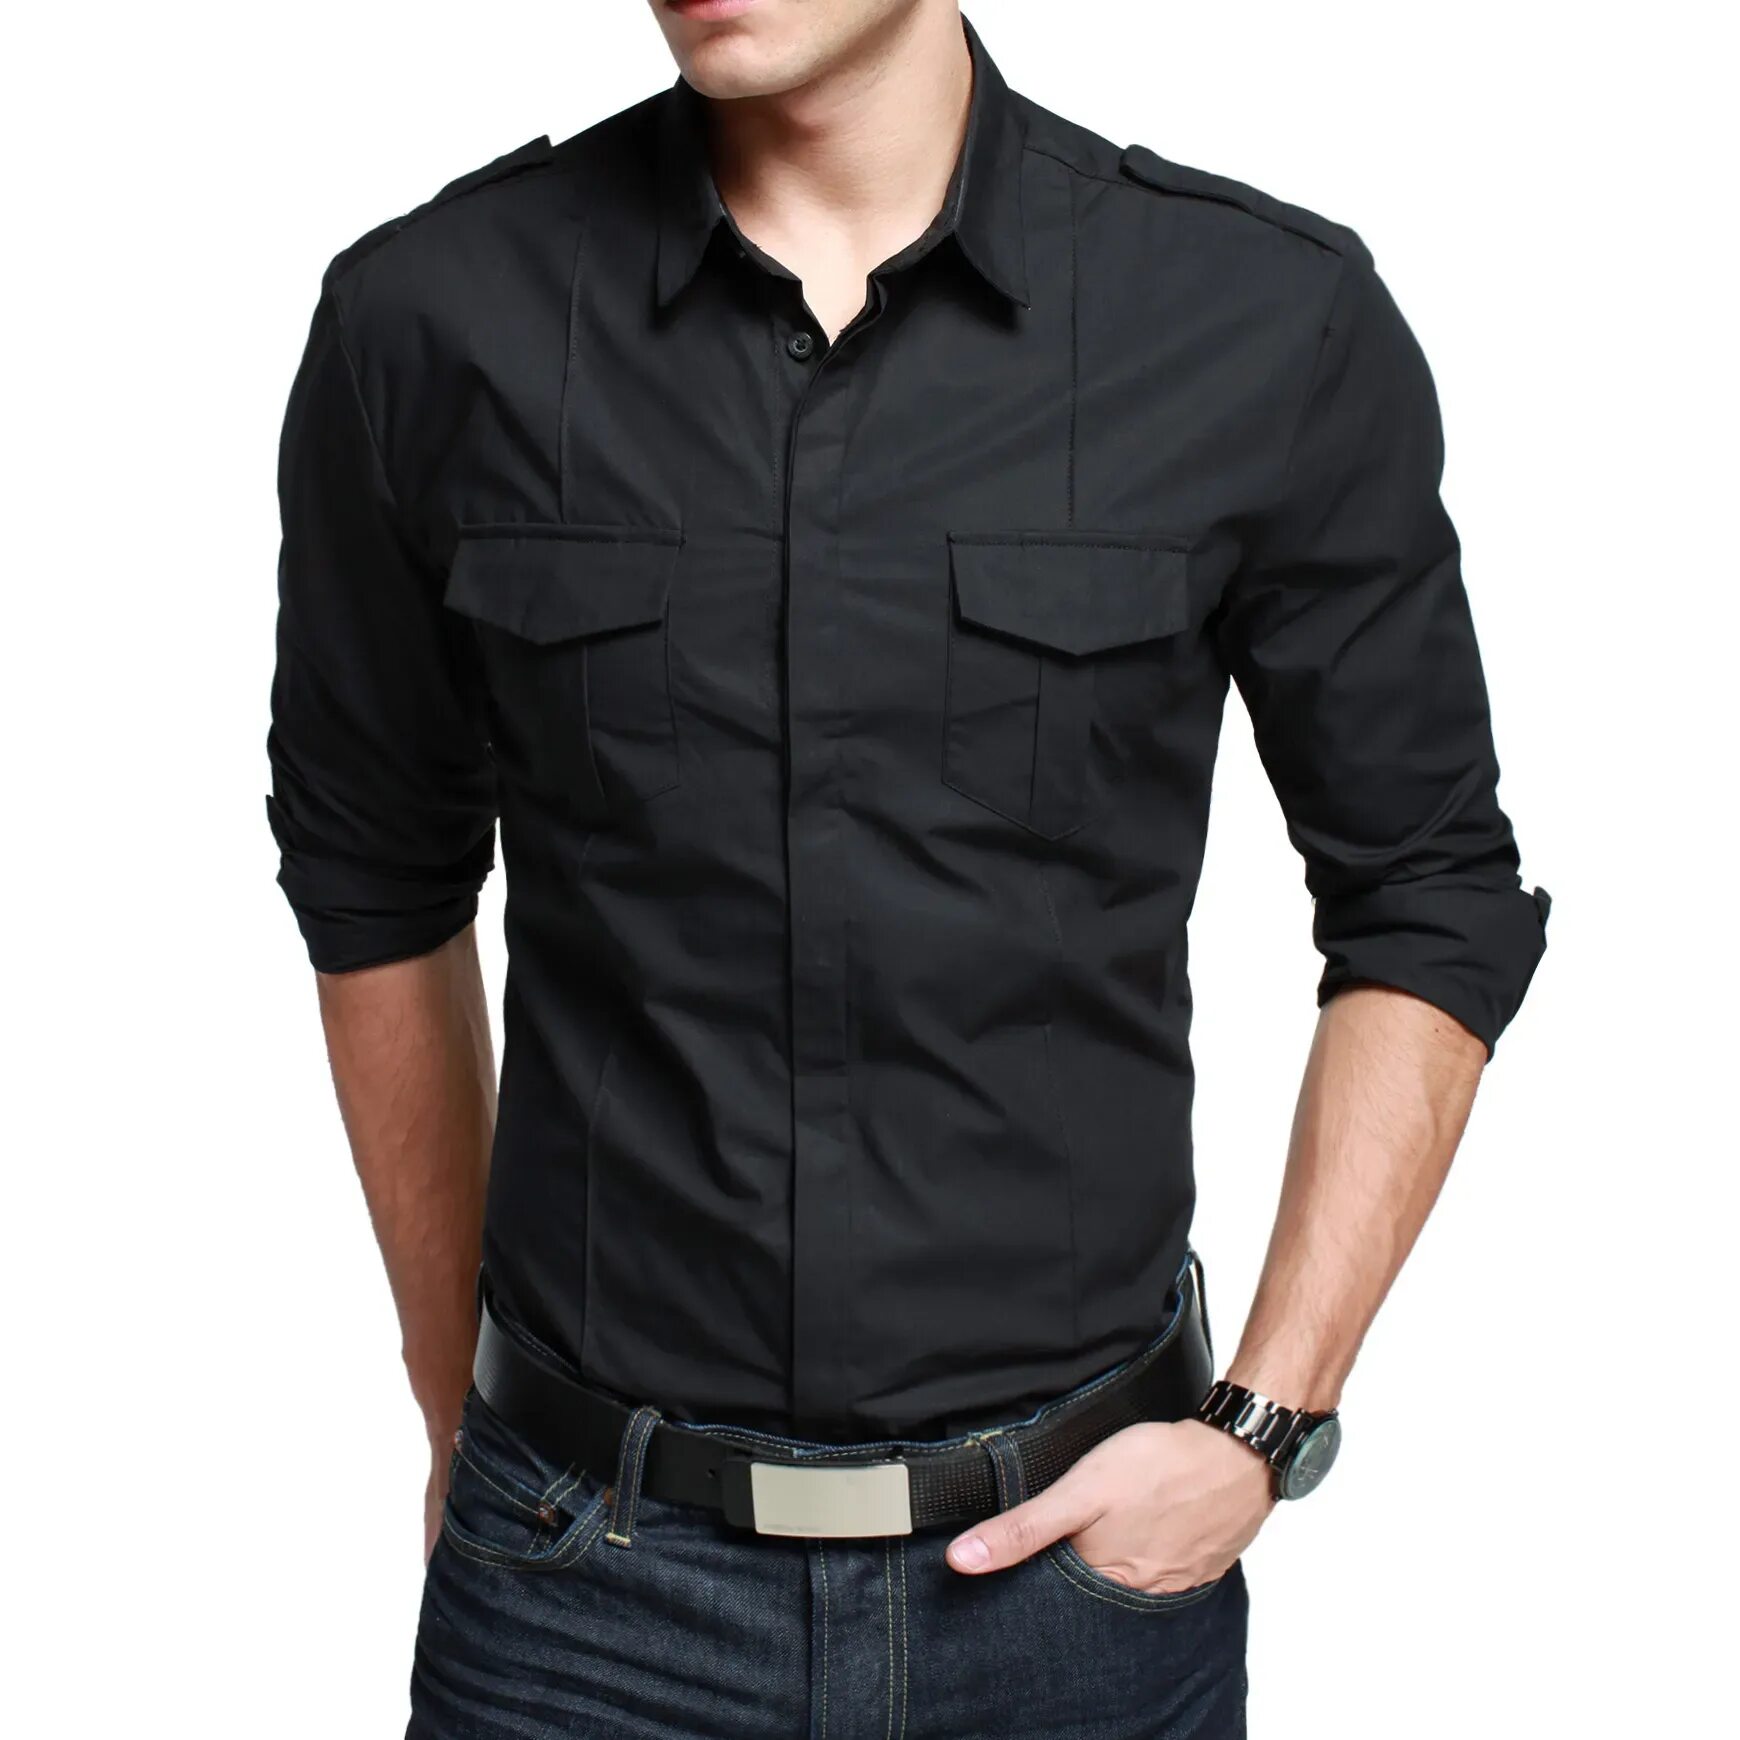 Черная рубашка. Рубашка с погонами мужская. Черная рубашка с погонами. Черная рубашка с погонами мужская. Черная рубашка с карманами мужская.